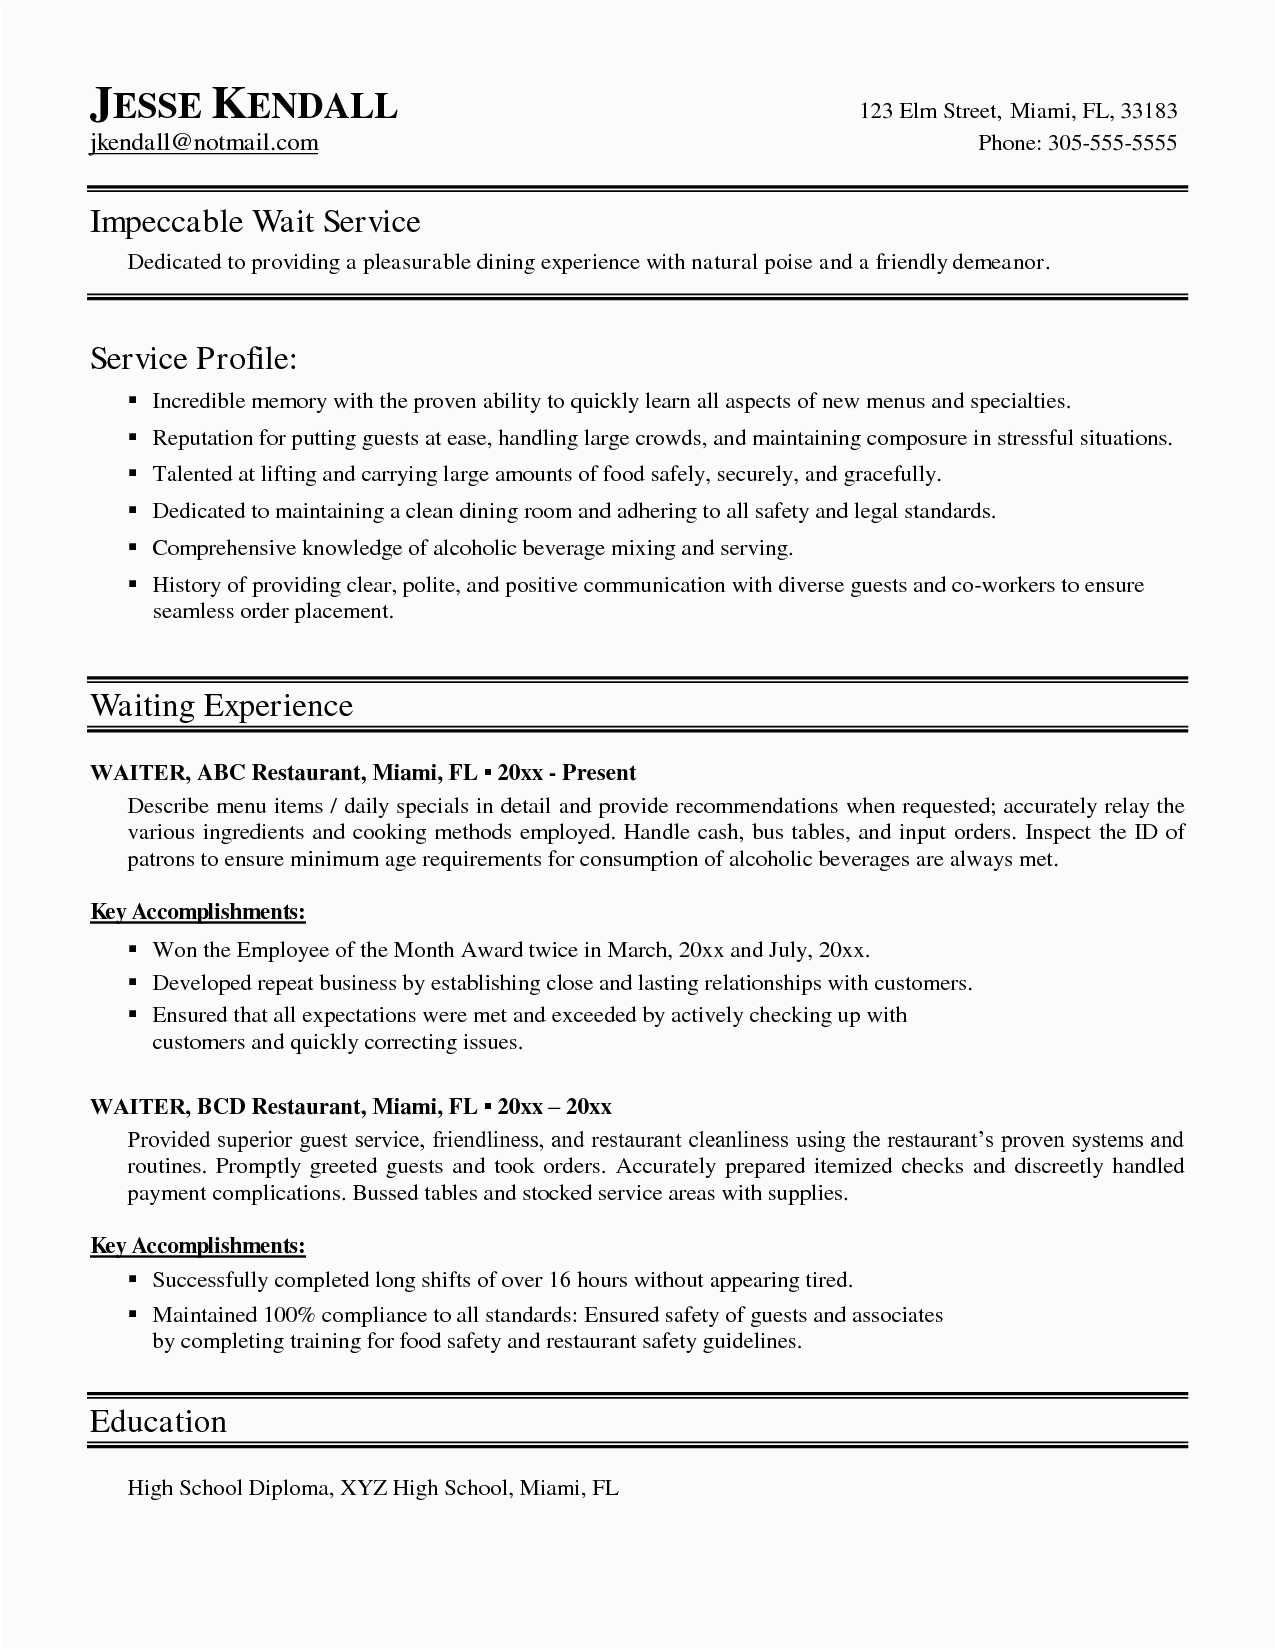 Waitress Job Description for Resume Samples Waitress Resume Template